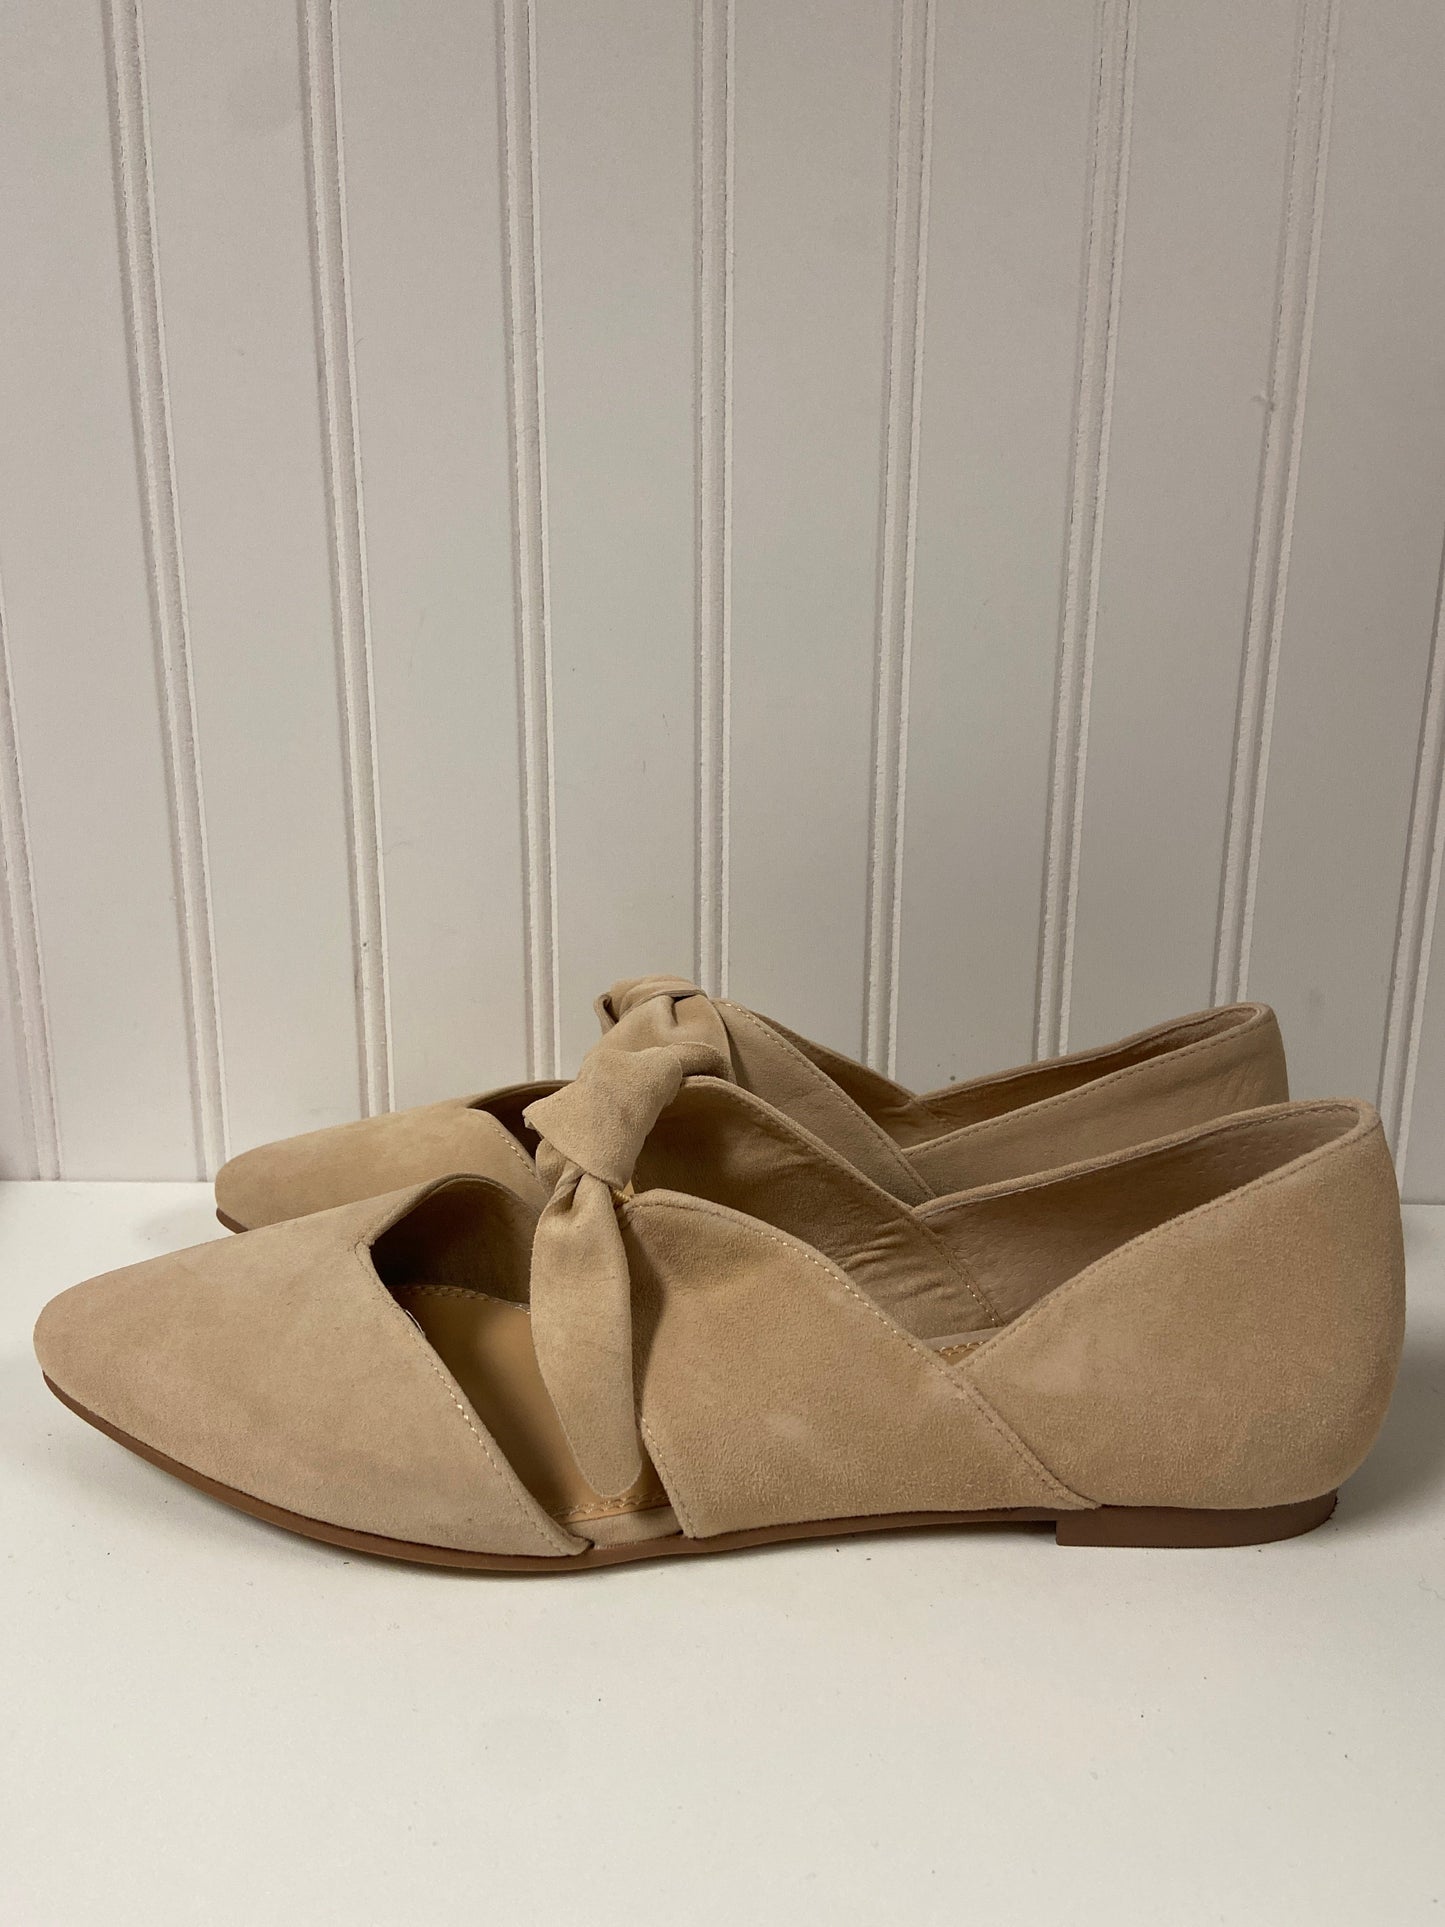 Tan Shoes Flats Giani Bernini, Size 9